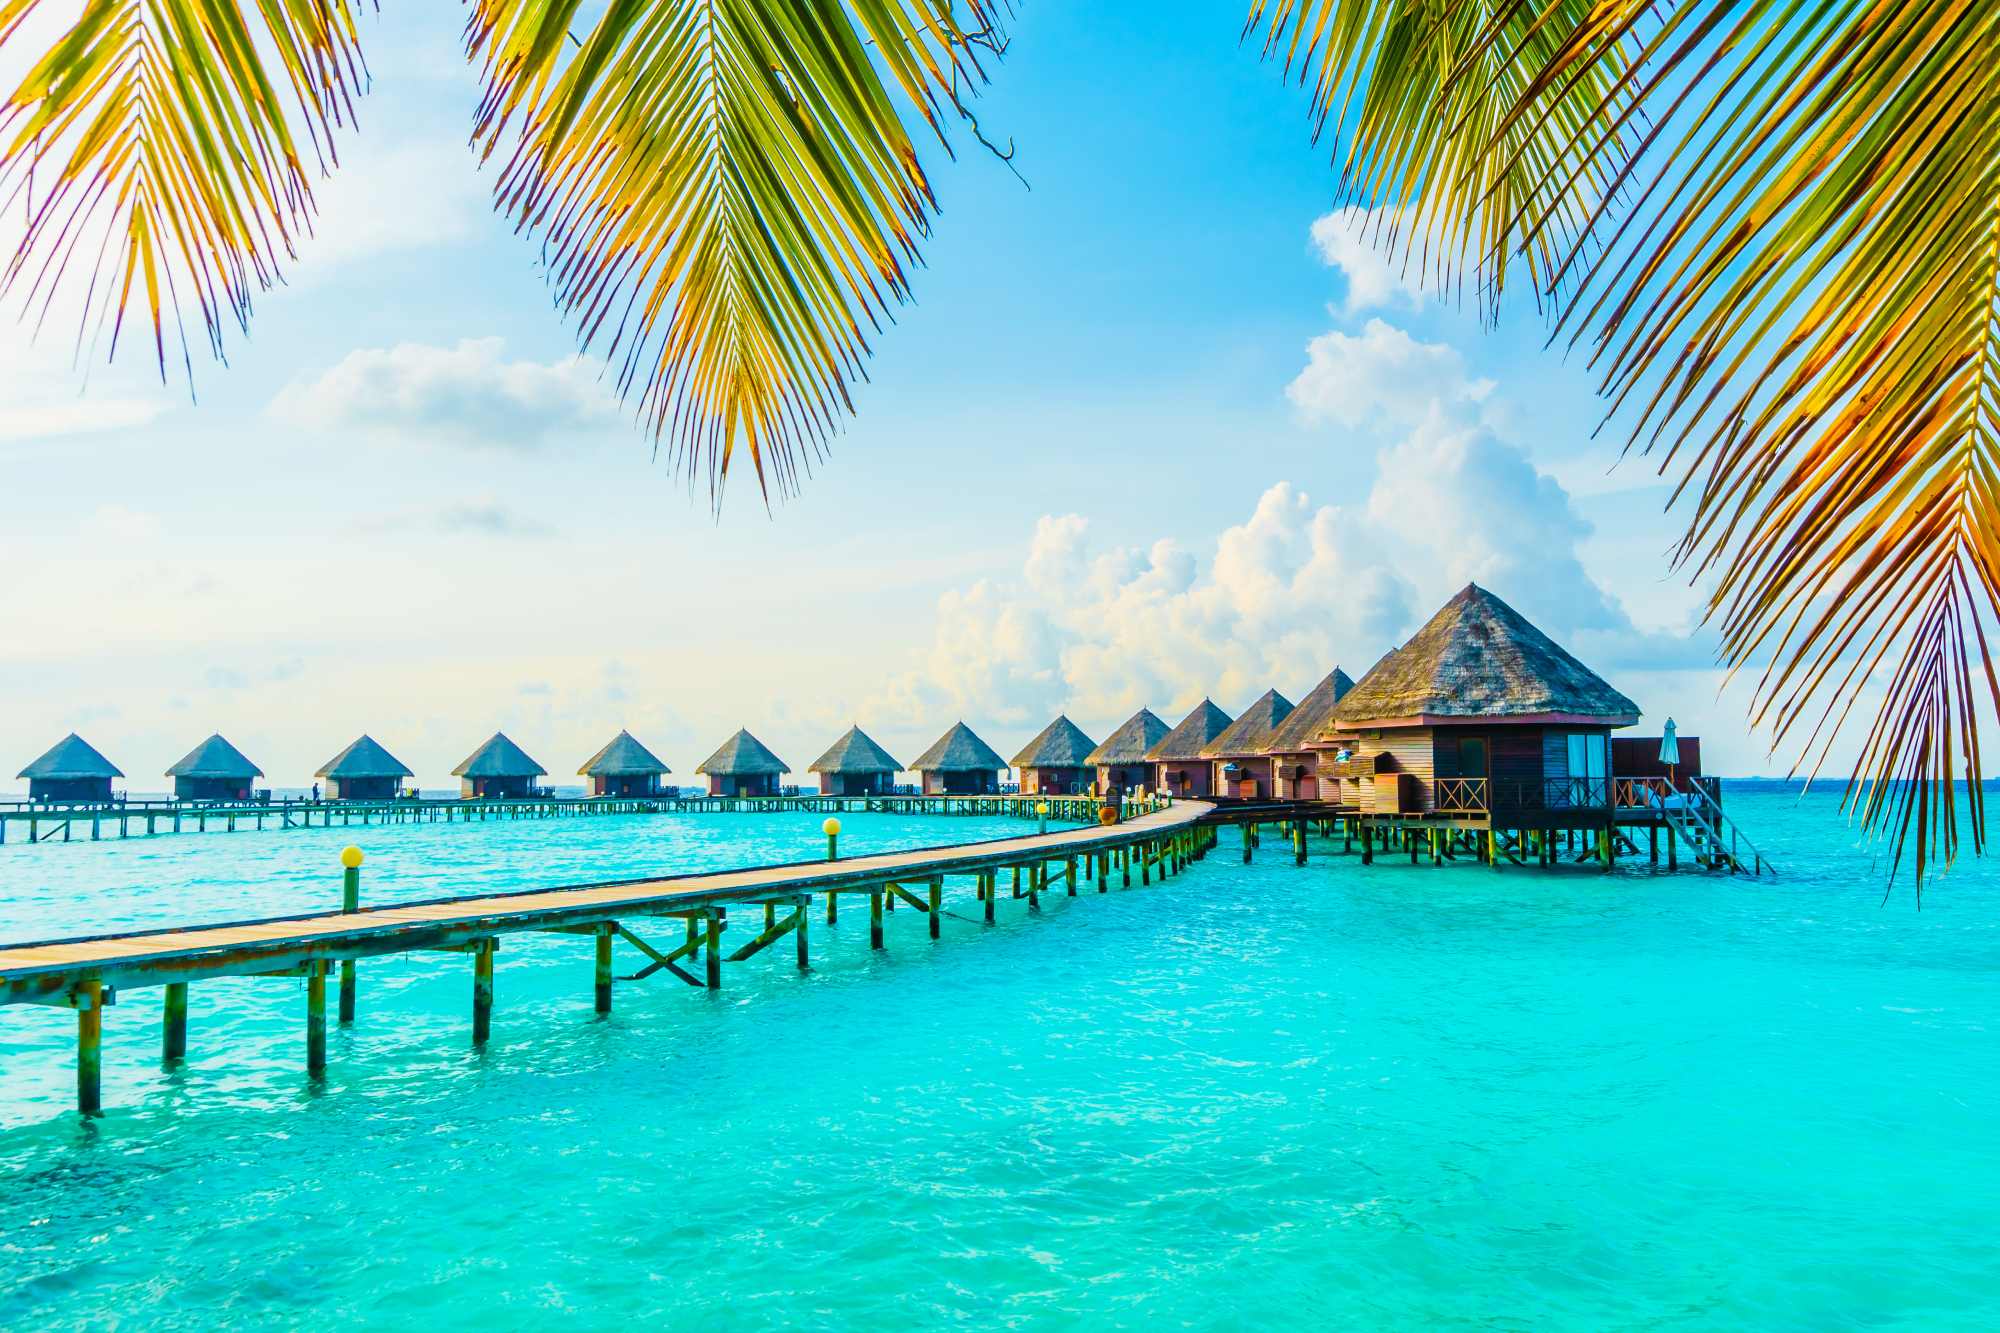 Schönes tropisches Malediven-Resort-Hotel und -Insel mit Strand und Meer am Himmel für Urlaubsurlaub-Hintergrundkonzept -Farbverarbeitung steigern